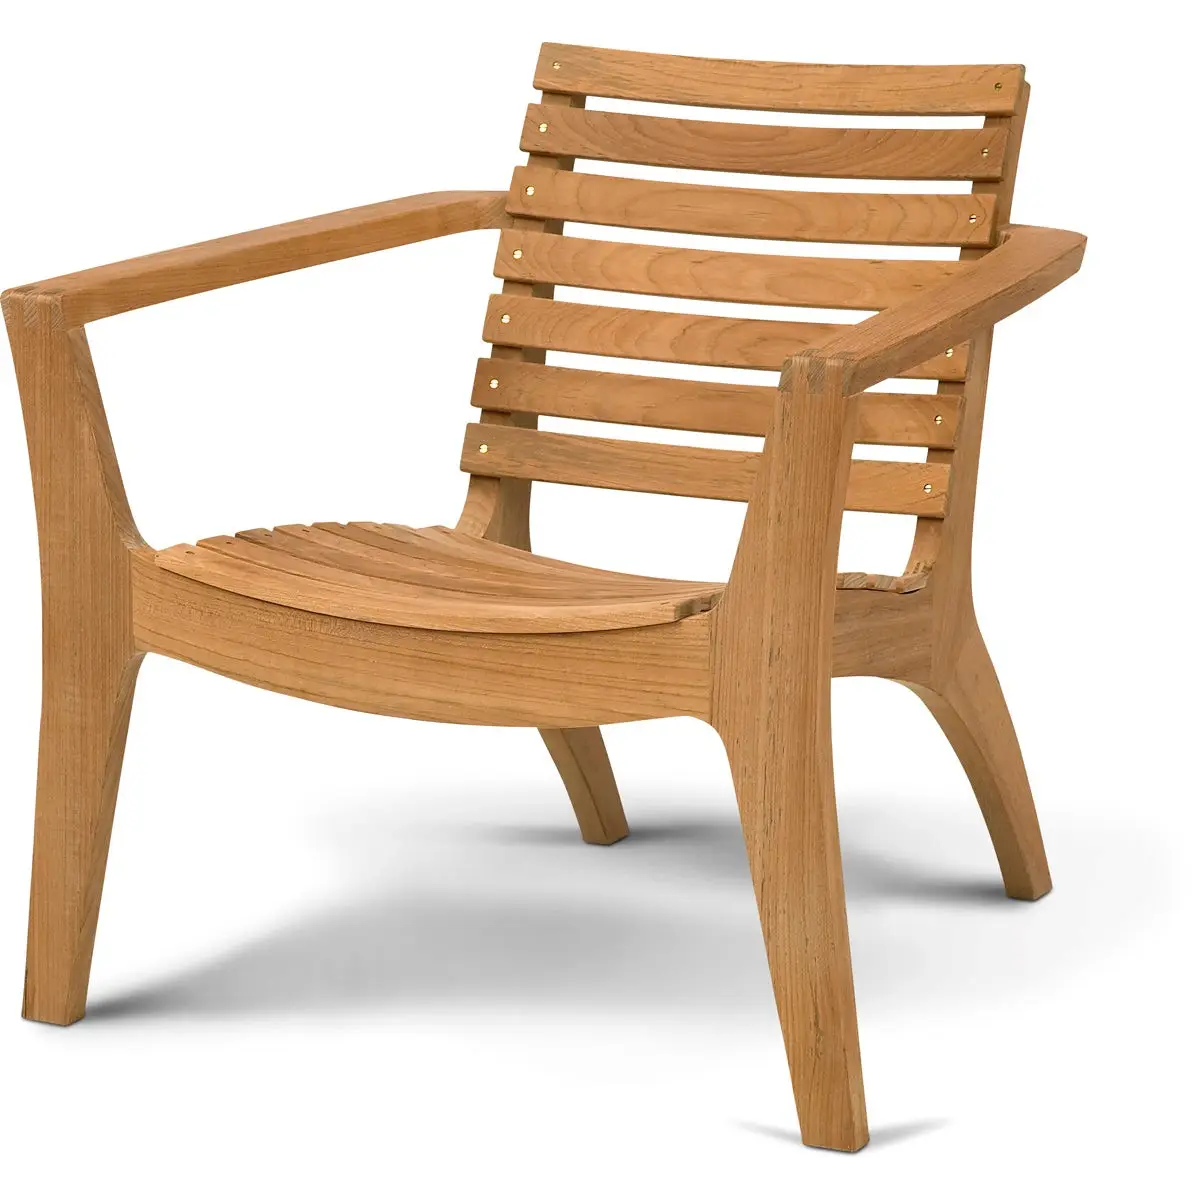 Chaise empilable en bois de teck pour Patio jardin, meubles d'extérieur indonésie, bois de teck, bois d'acacia pour meubles d'extérieur